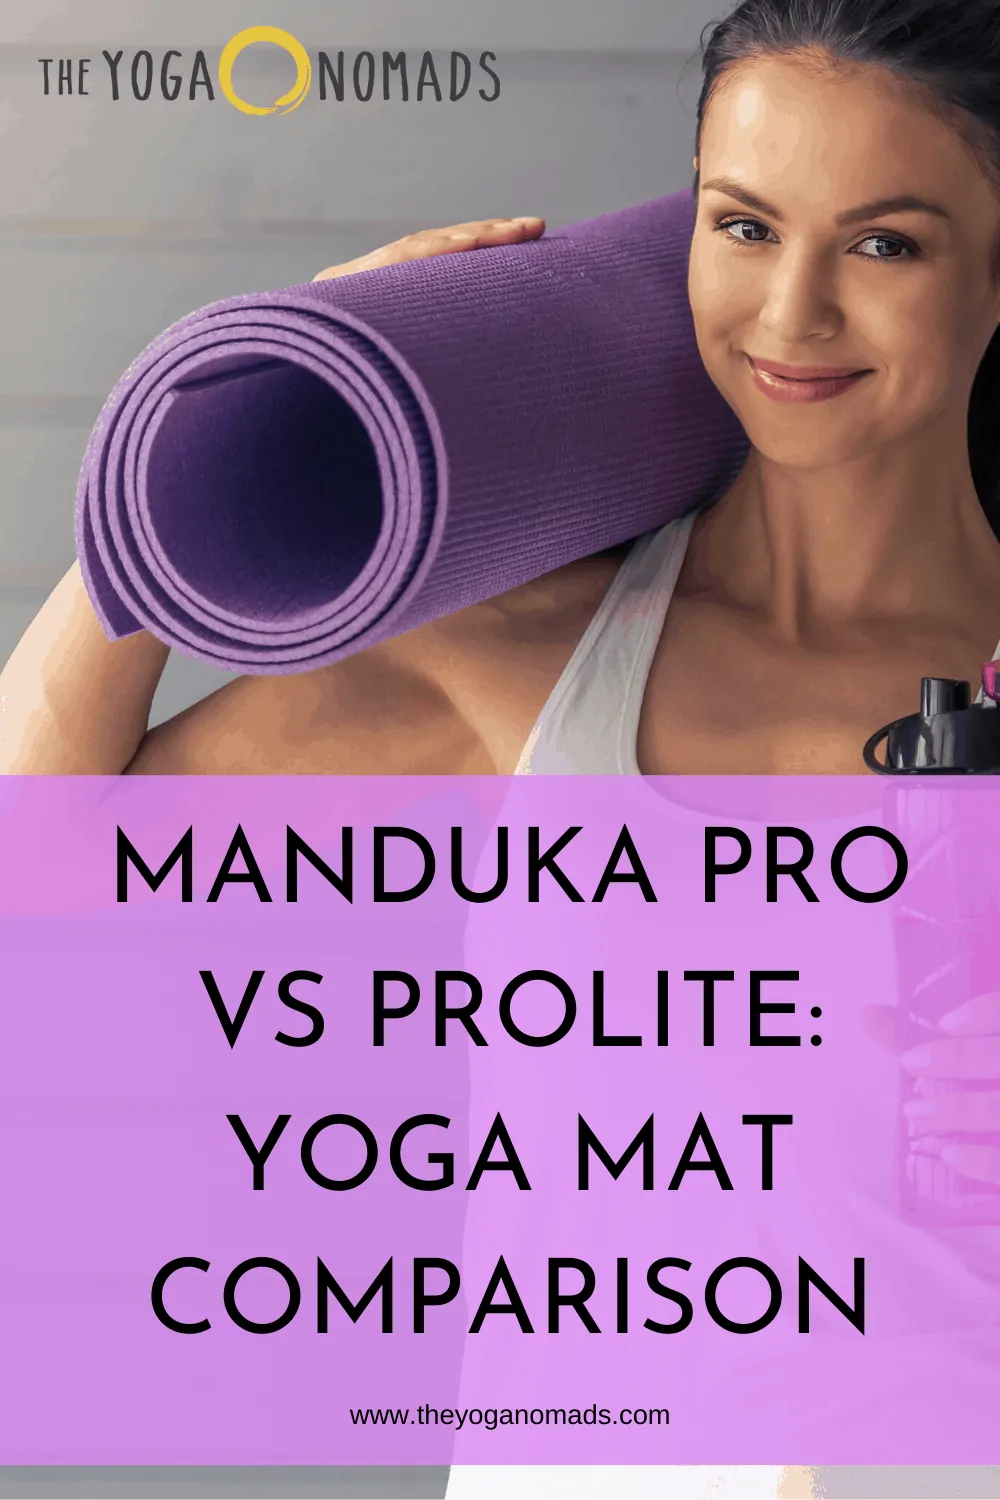 Manduka Pro vs Prolite